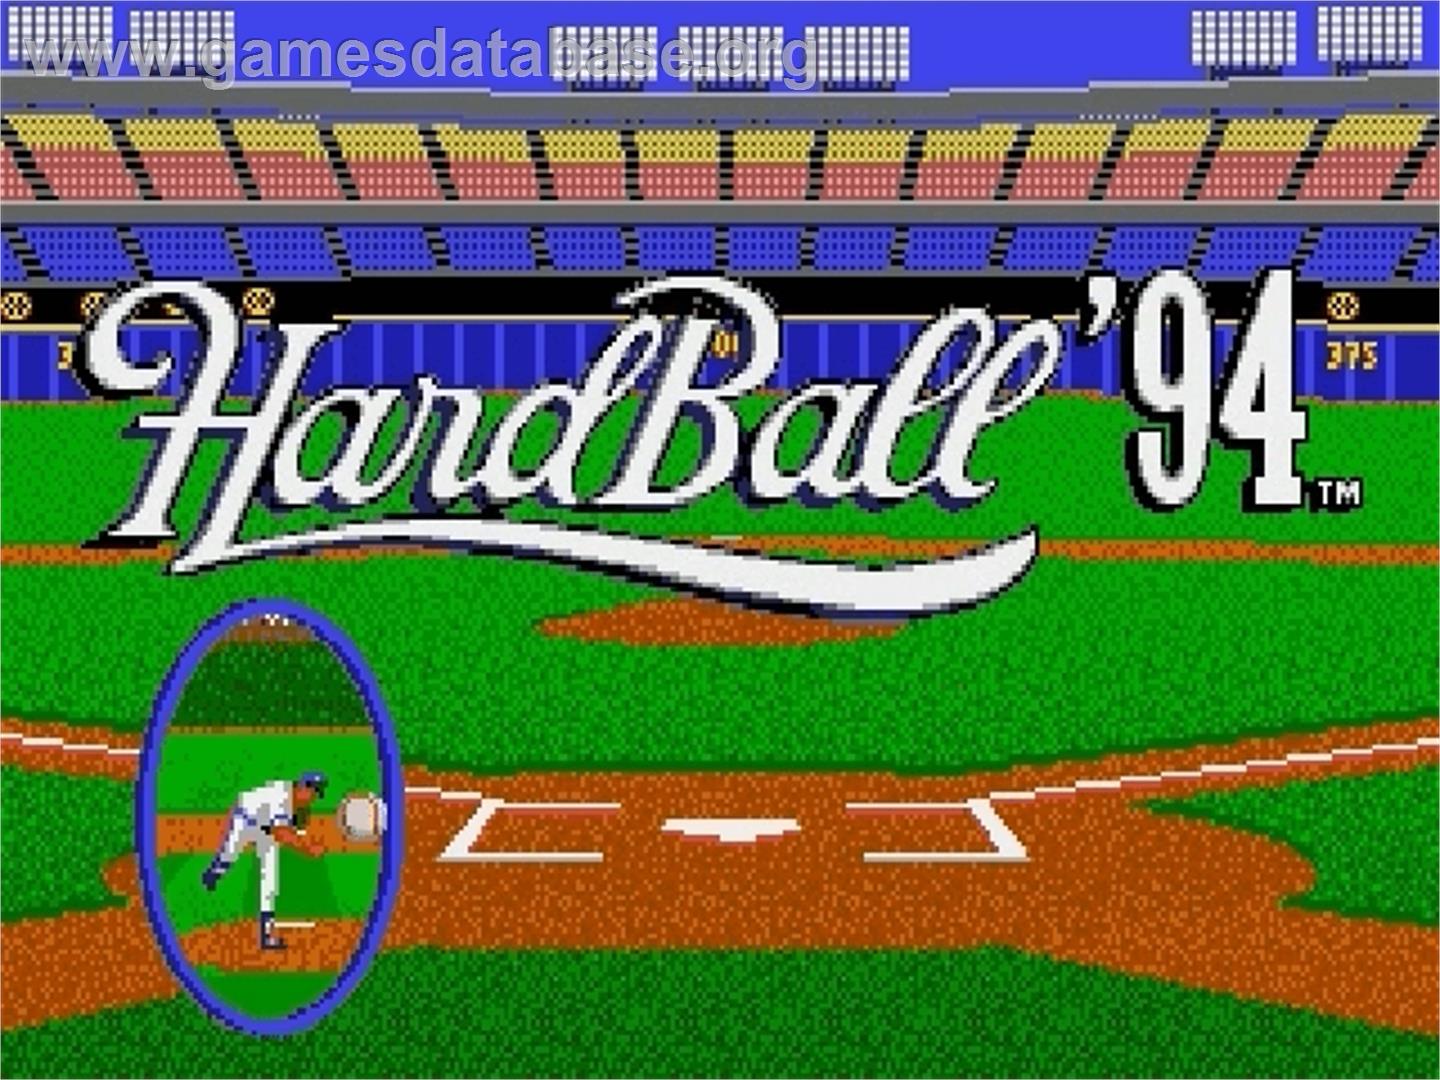 HardBall 4 - Sega Genesis - Artwork - Title Screen